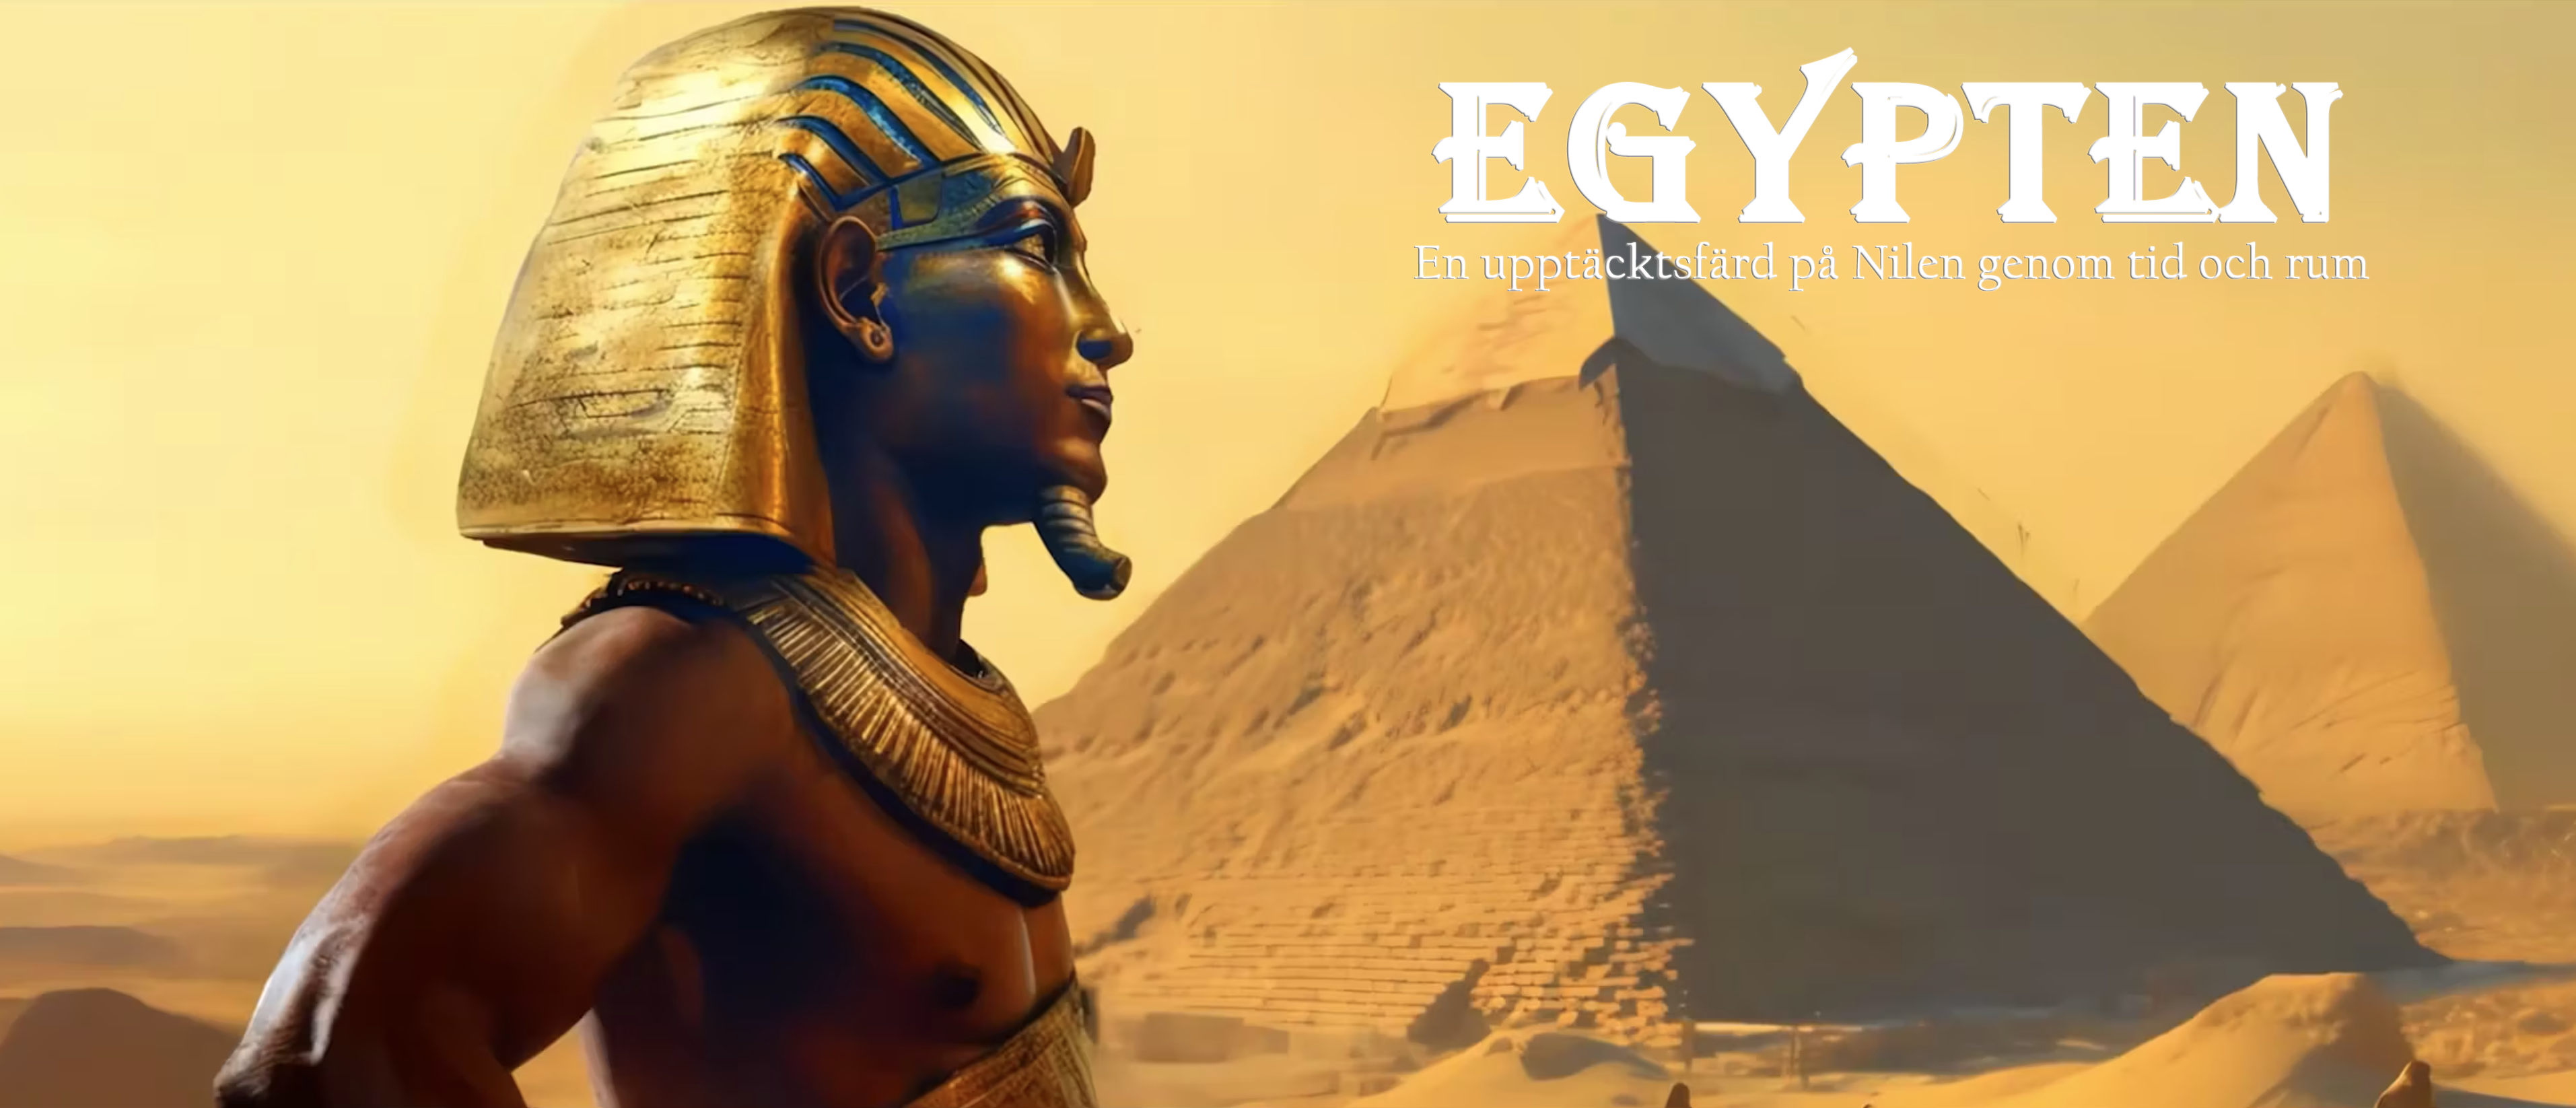 Egypten – En upptäcktsfärd på Nilen genom tid och rum